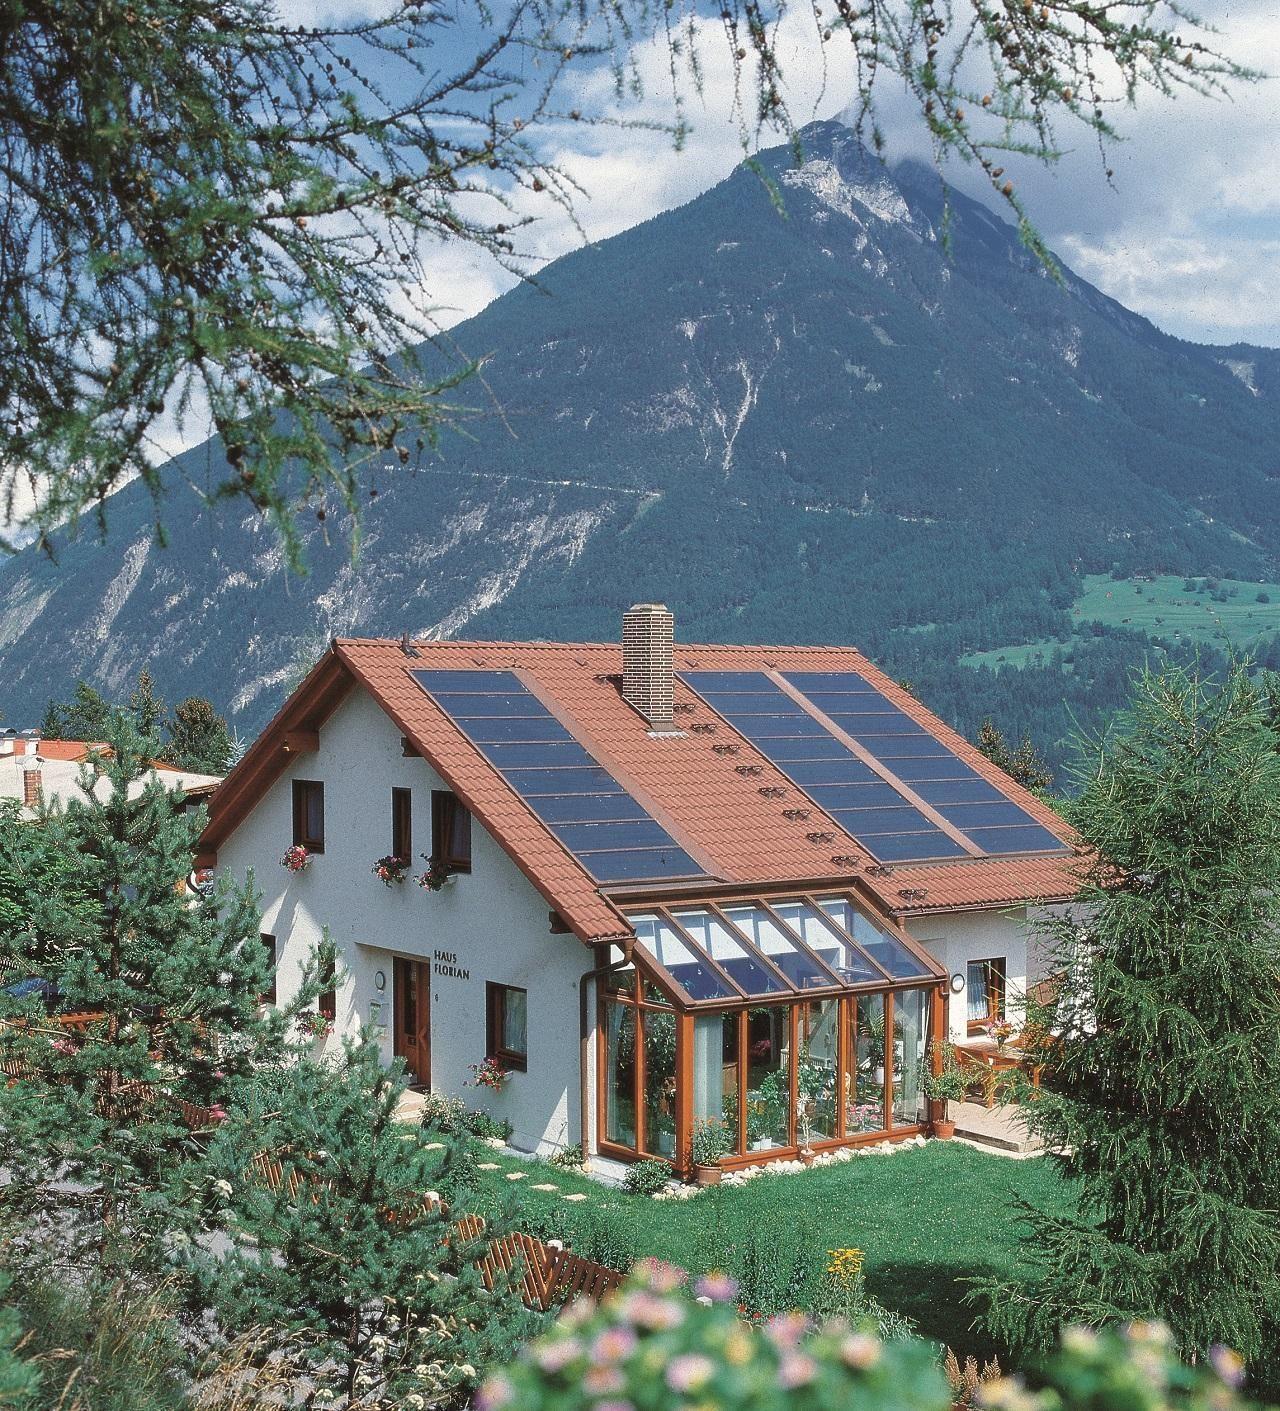 Ferienhaus in Gemeinde Imst mit Garten, Terrasse u Ferienhaus  Tirol